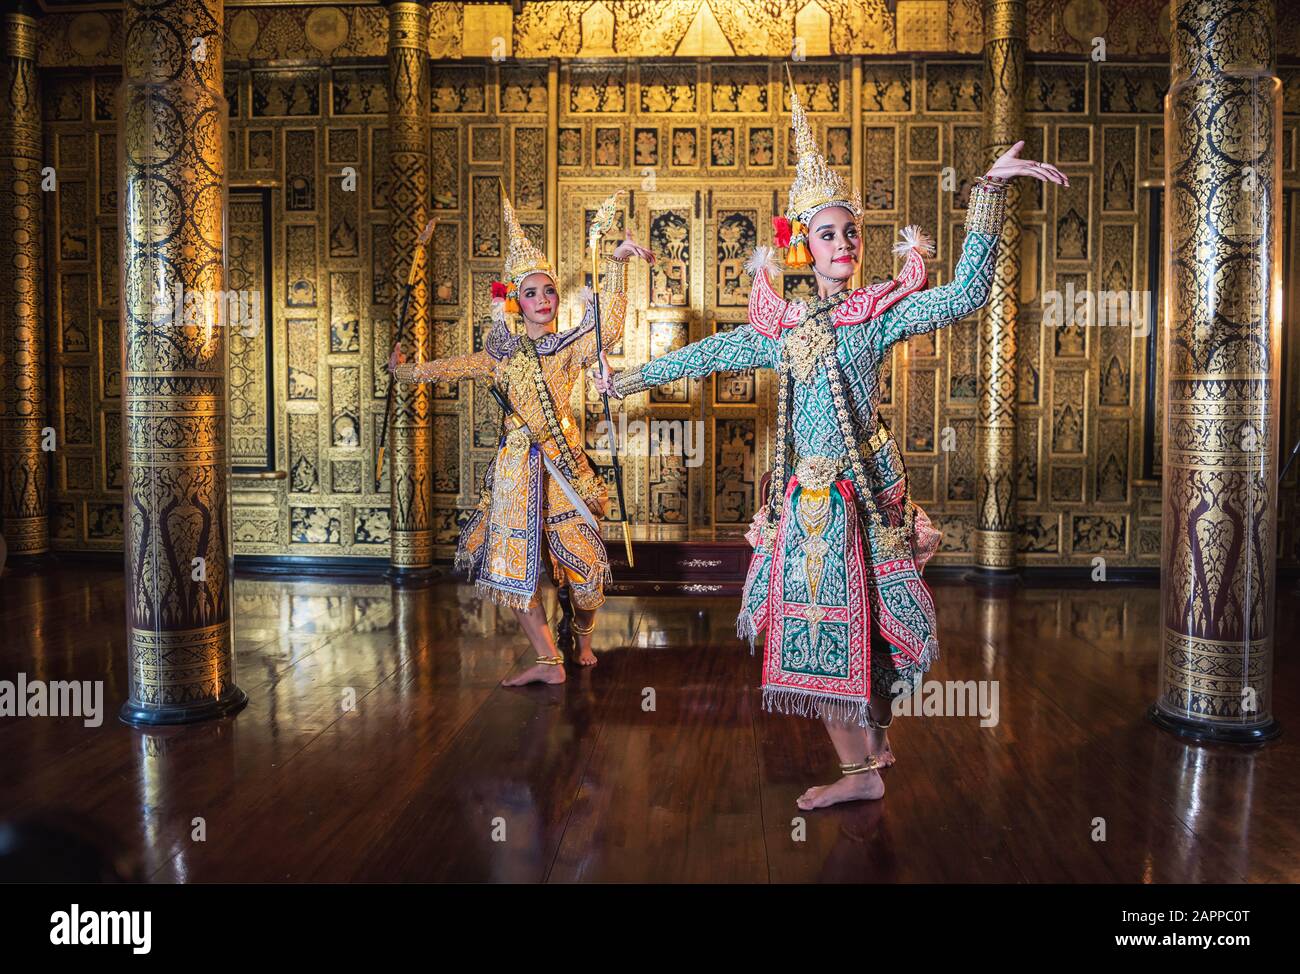 Khon est un art de théâtre de danse traditionnel de la thaï classique masqué, cette performance est l'épopée de Ramayana Banque D'Images